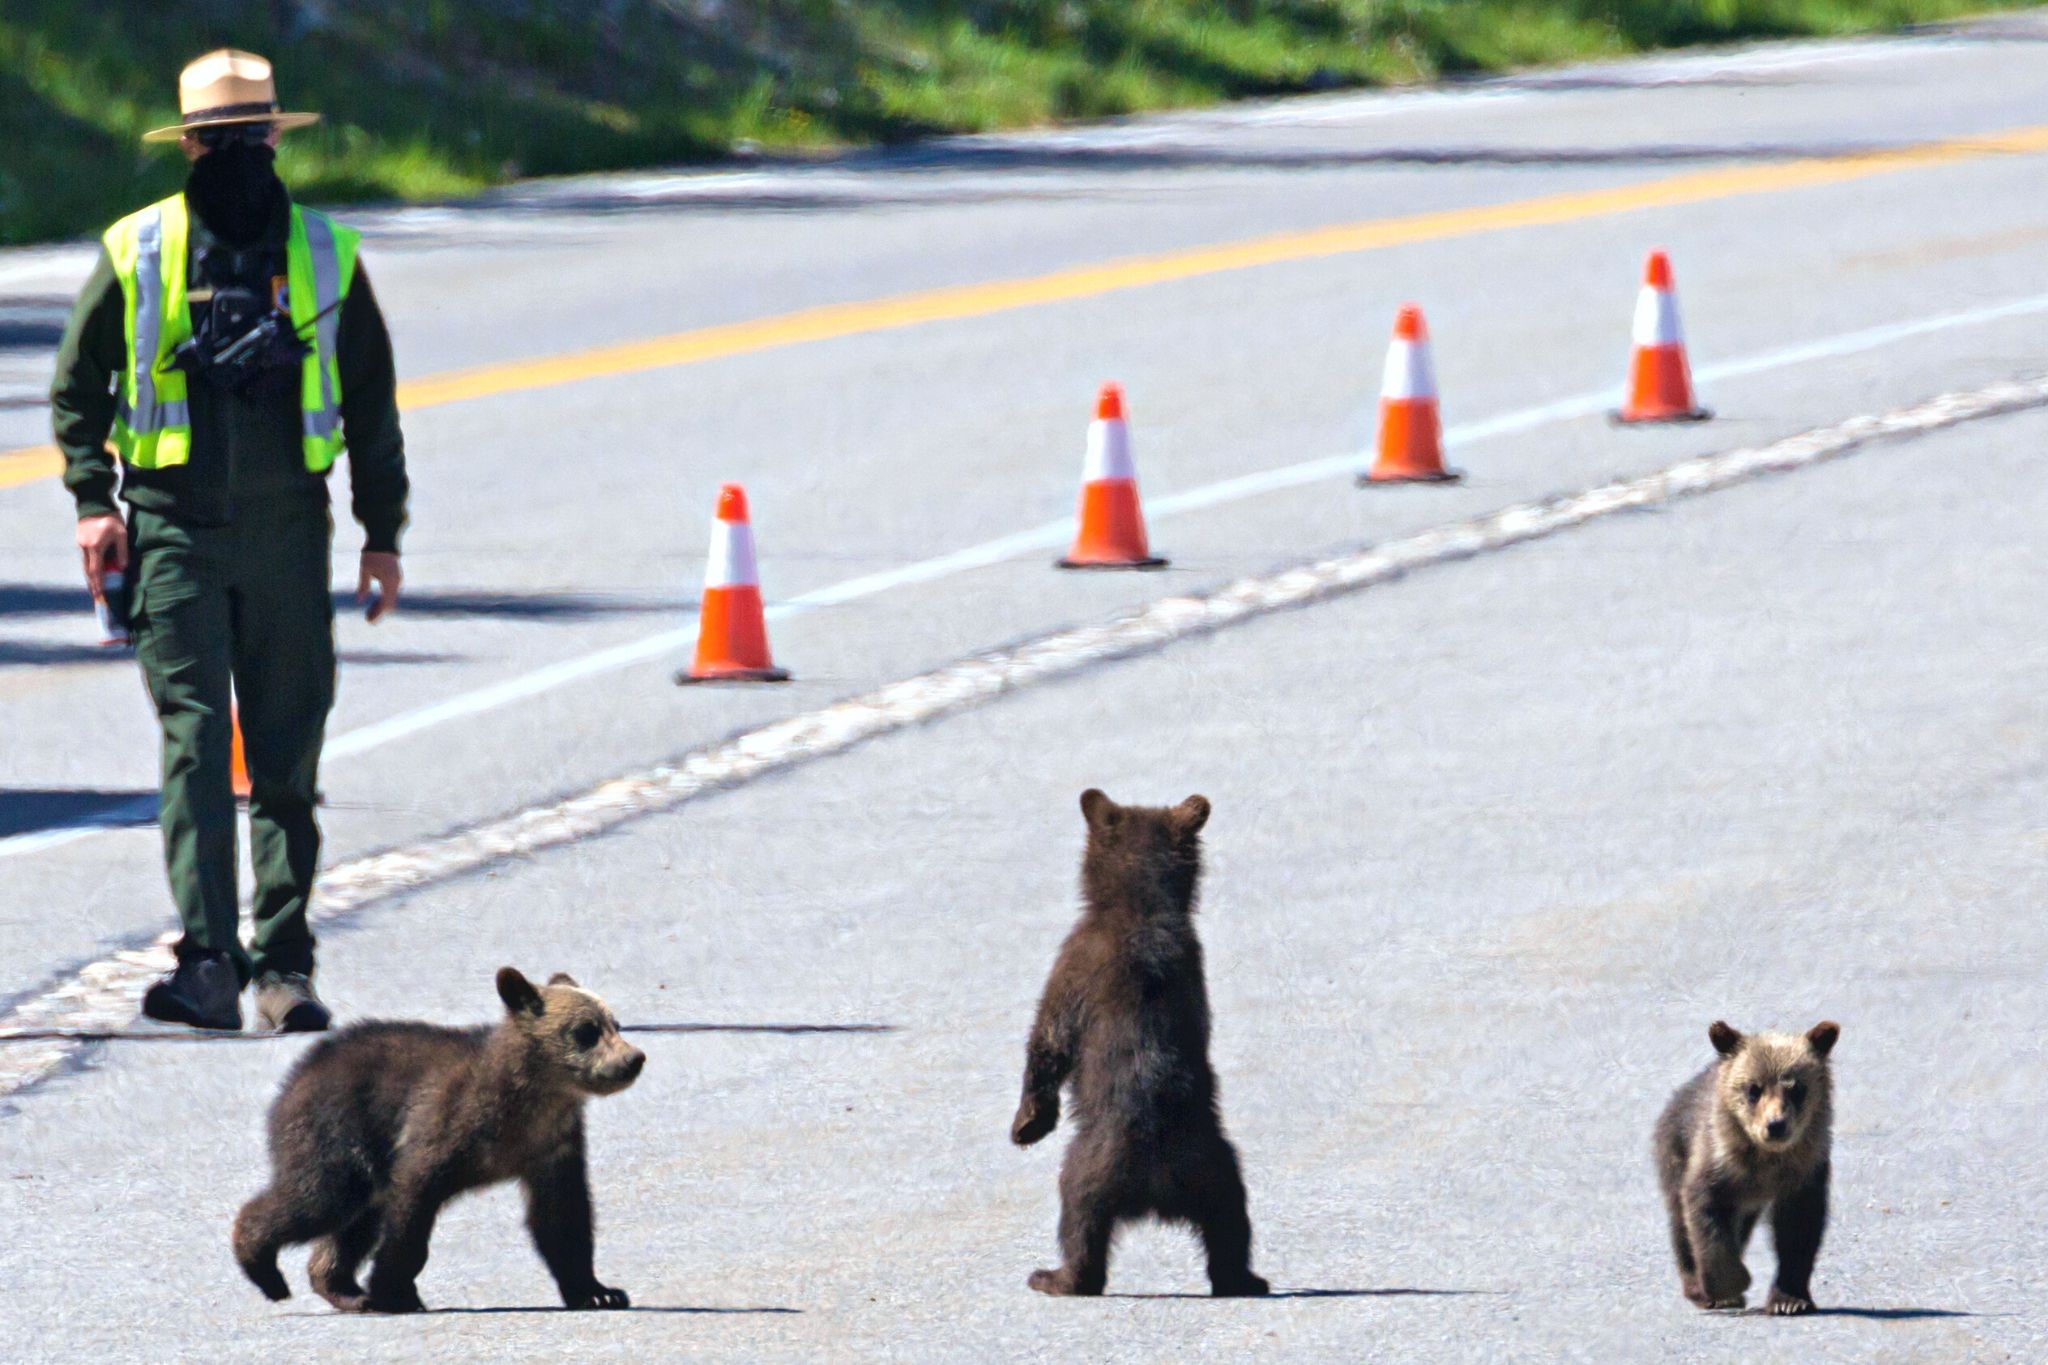 A park ranger approaching three bear cubs.